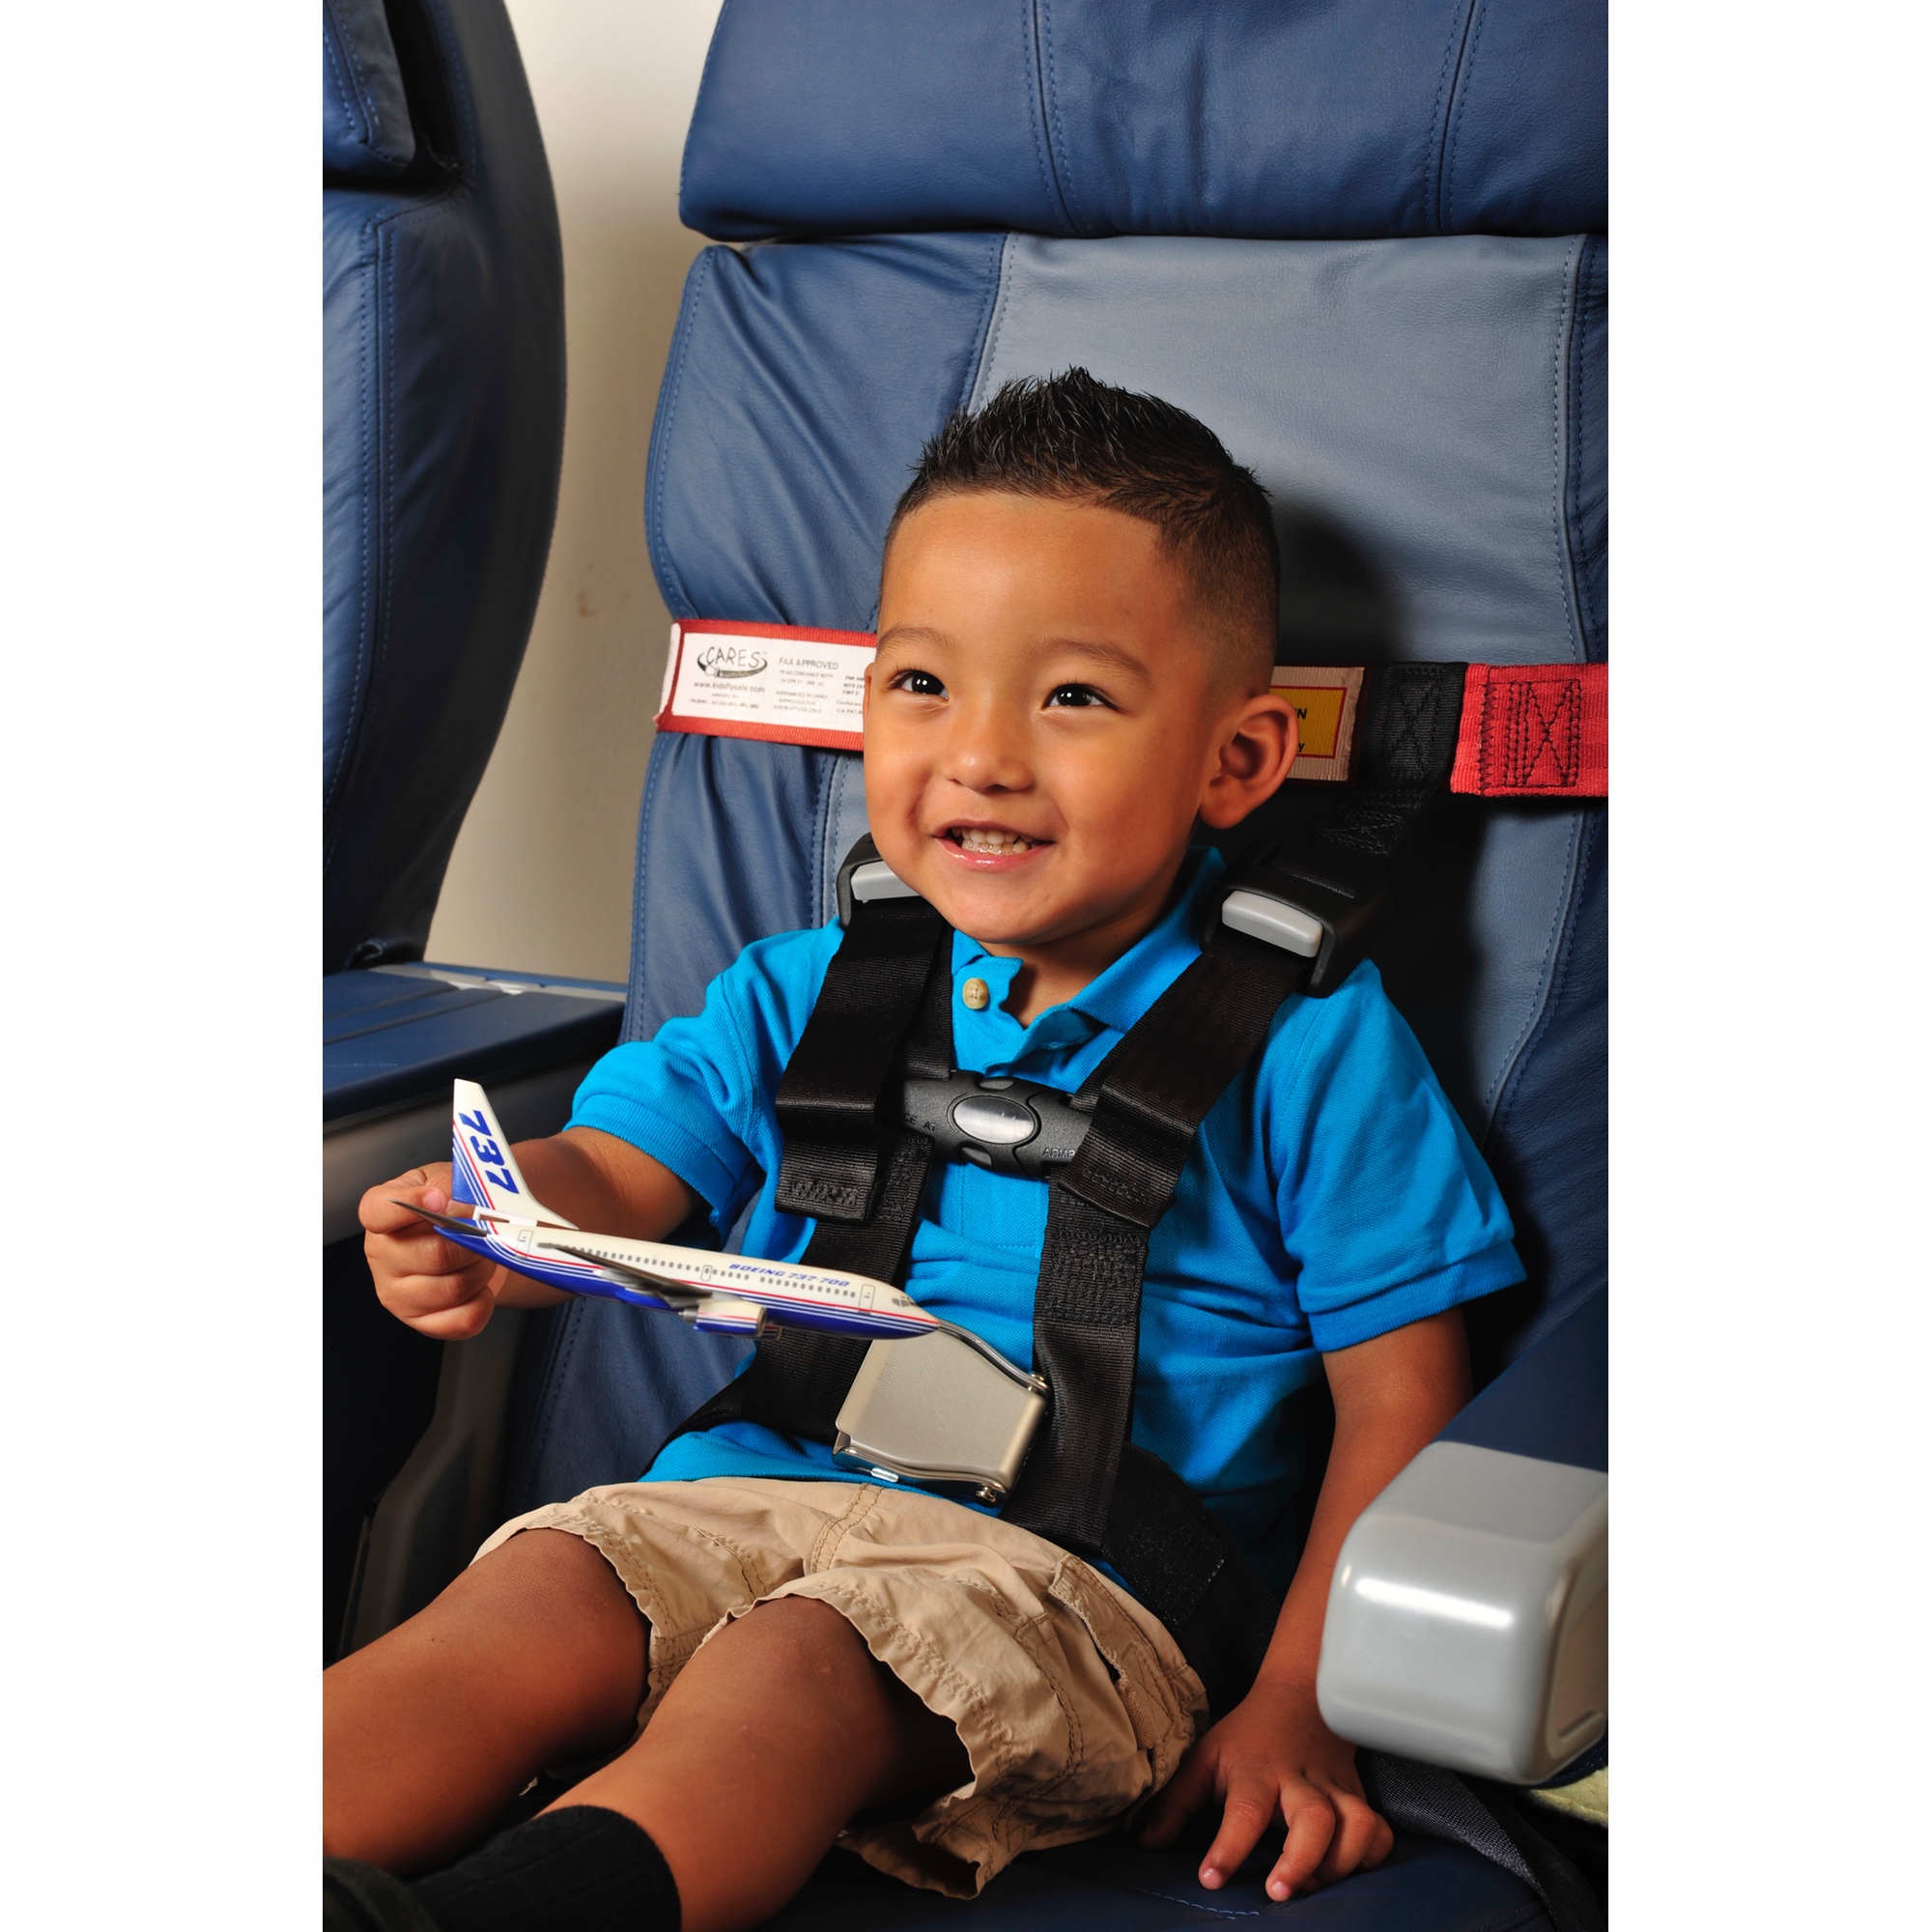 Kinder Sicherheitsgurt Sicherheit Flugzeug Reisegurt Safety Car